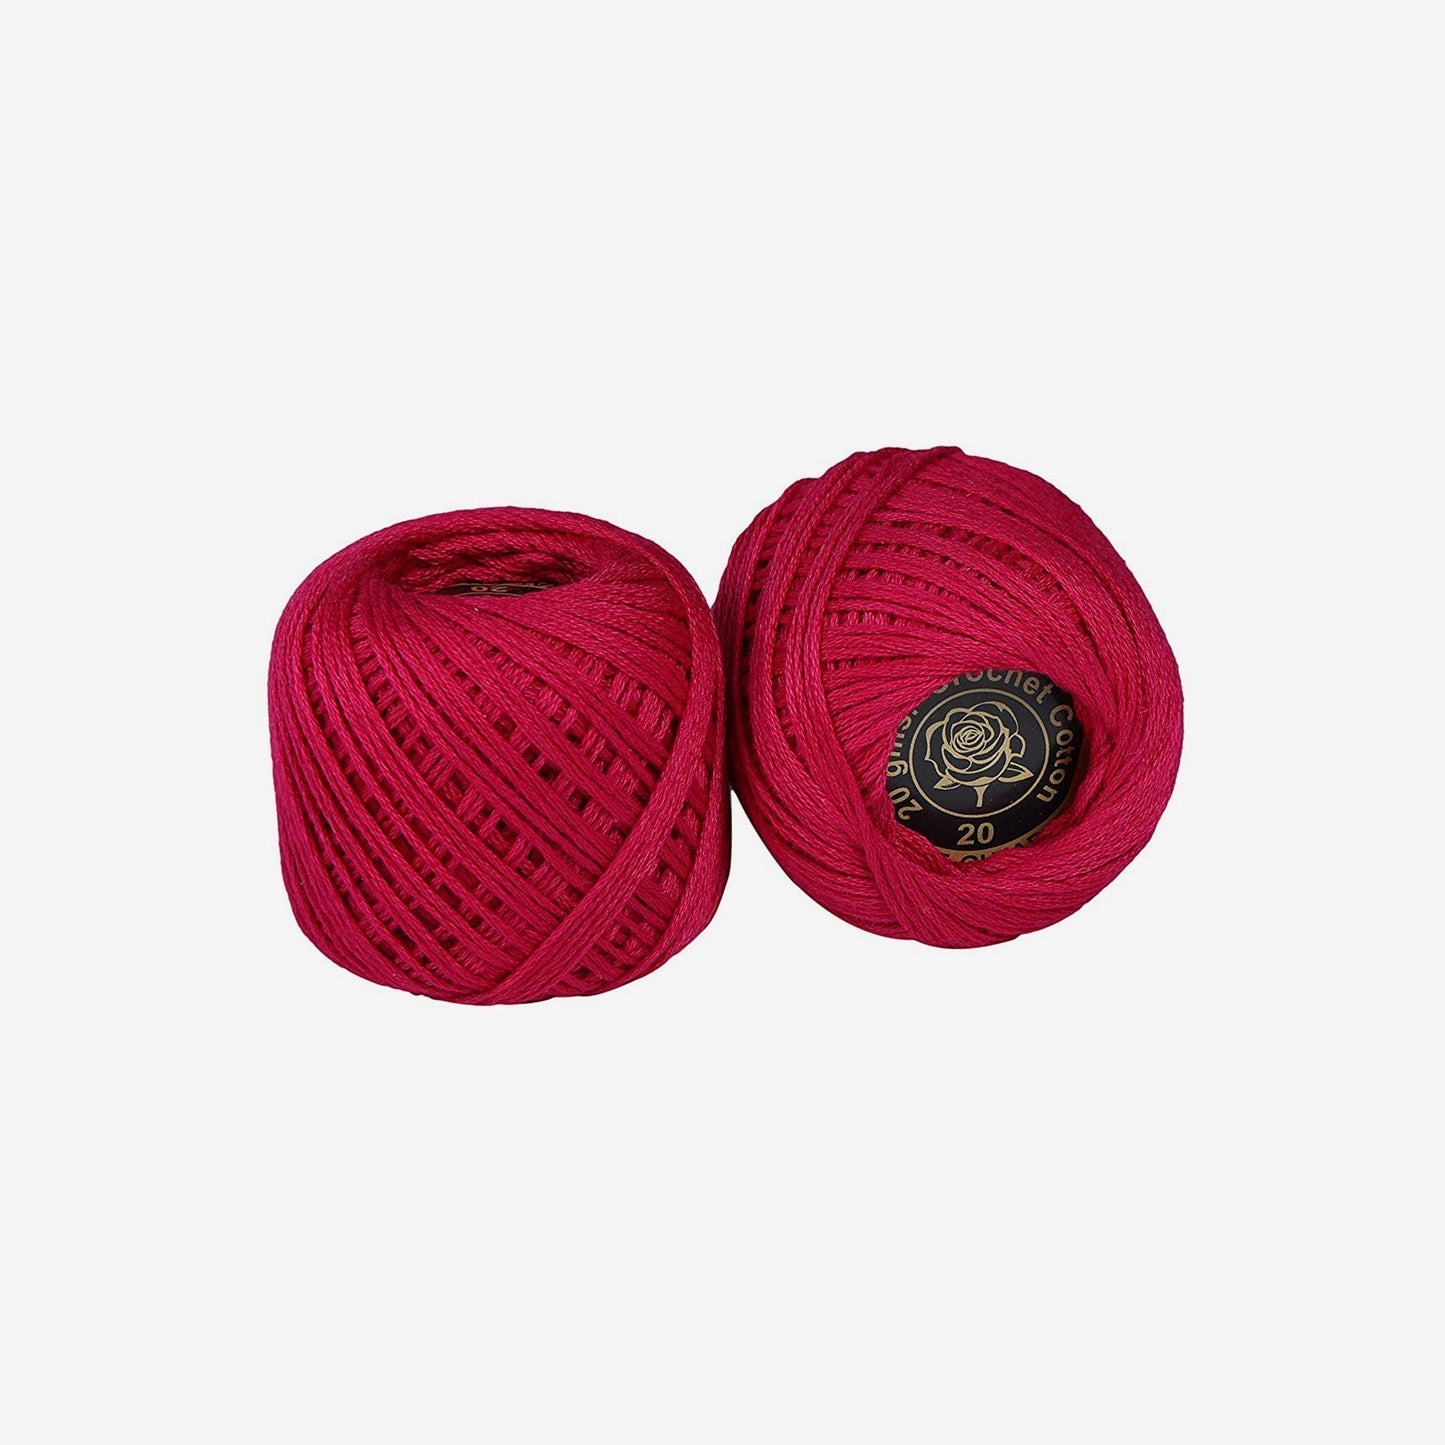 Hand-crochet hoops (Variation 17)